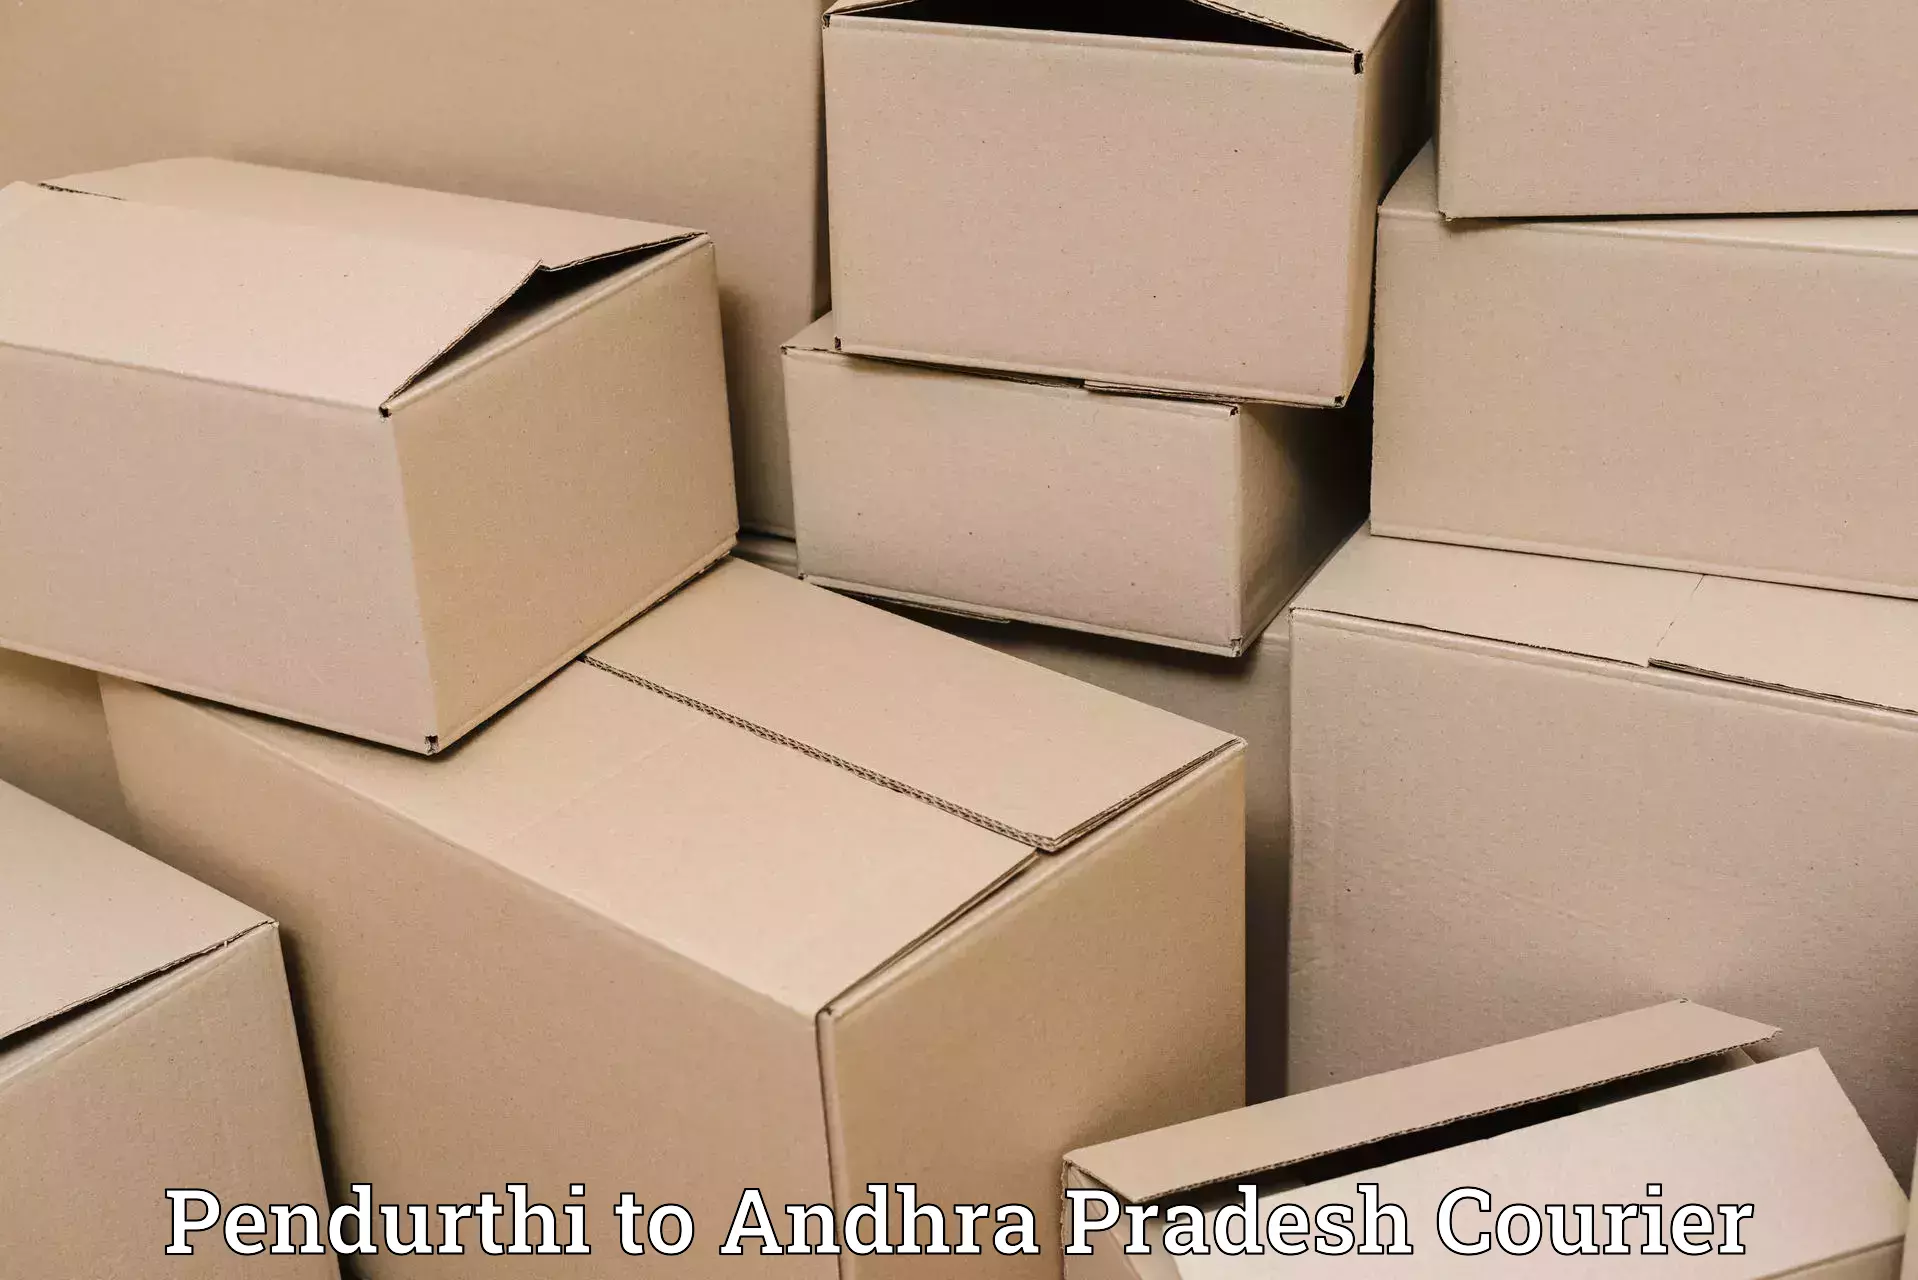 Advanced delivery network Pendurthi to Sarvepalli Nellore